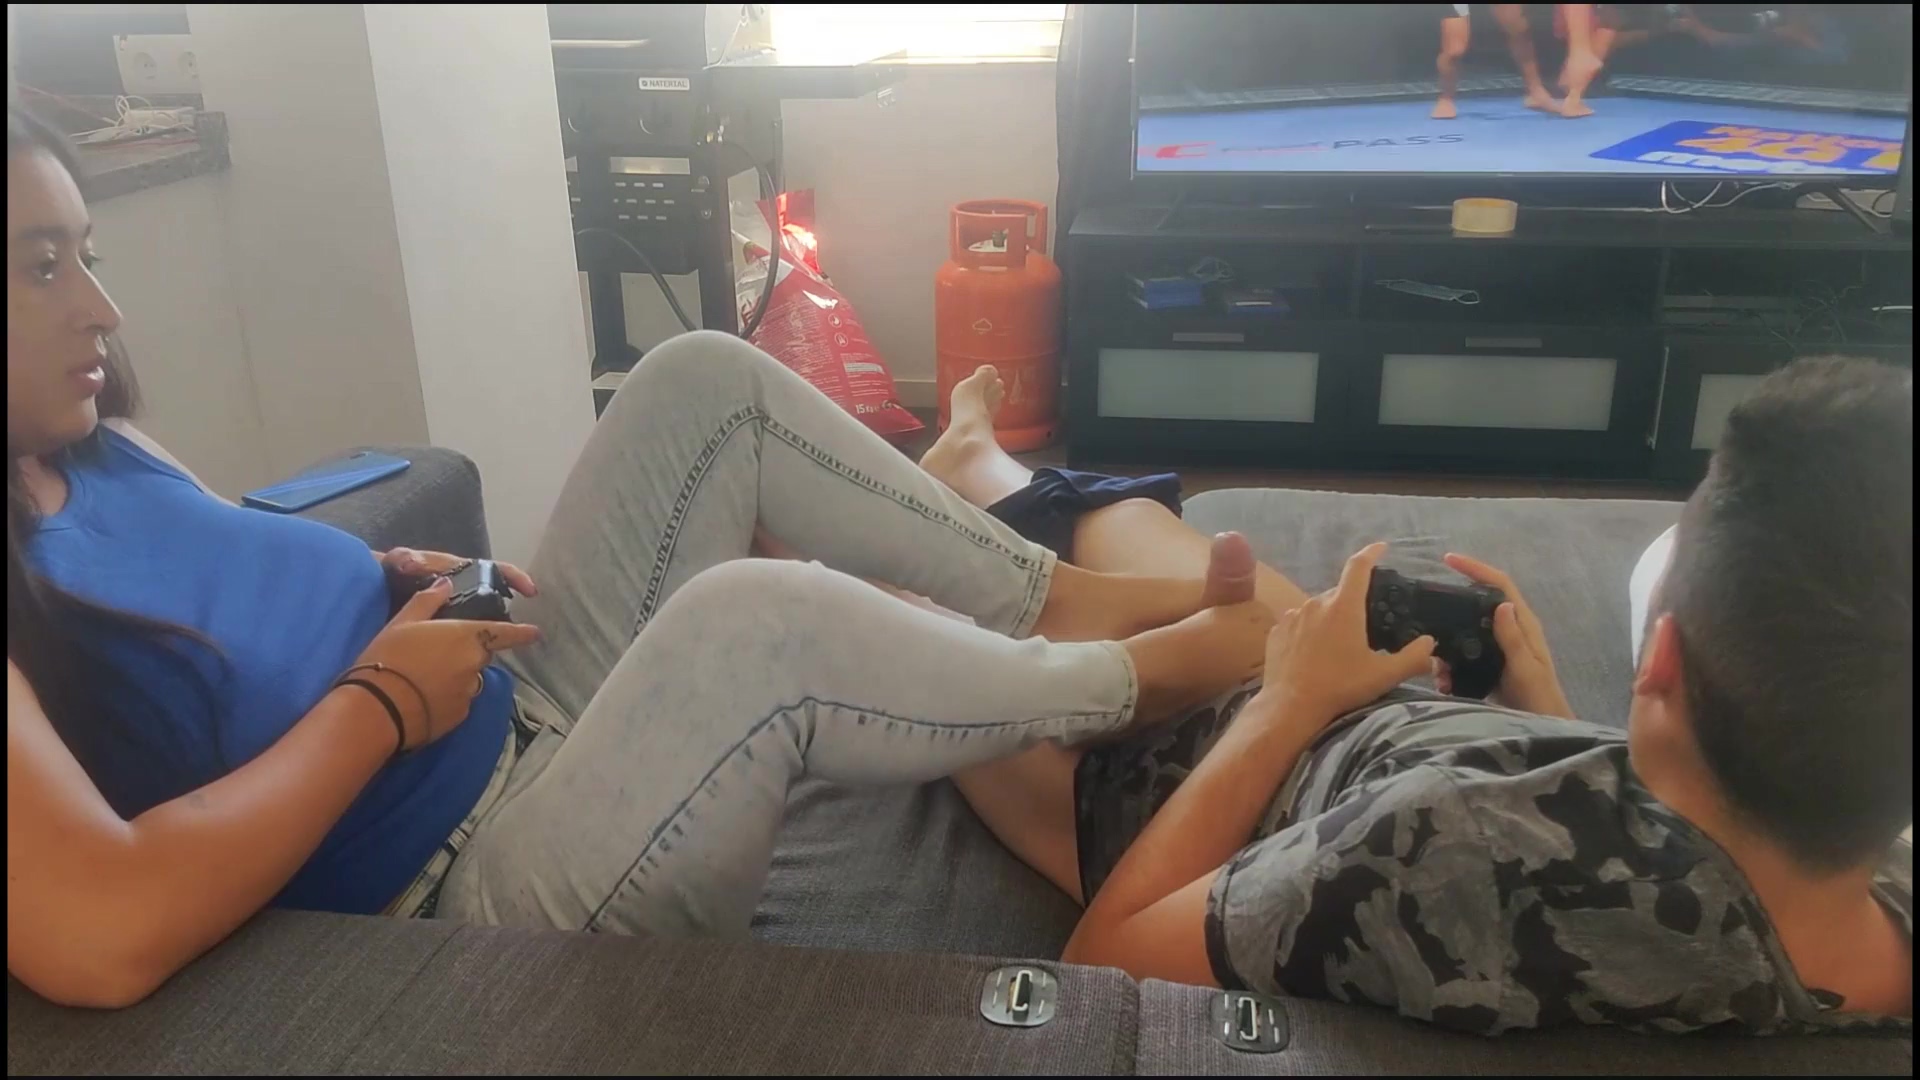 La petite amie dun ami donne un footjob pendant que nous jouons à la PS5